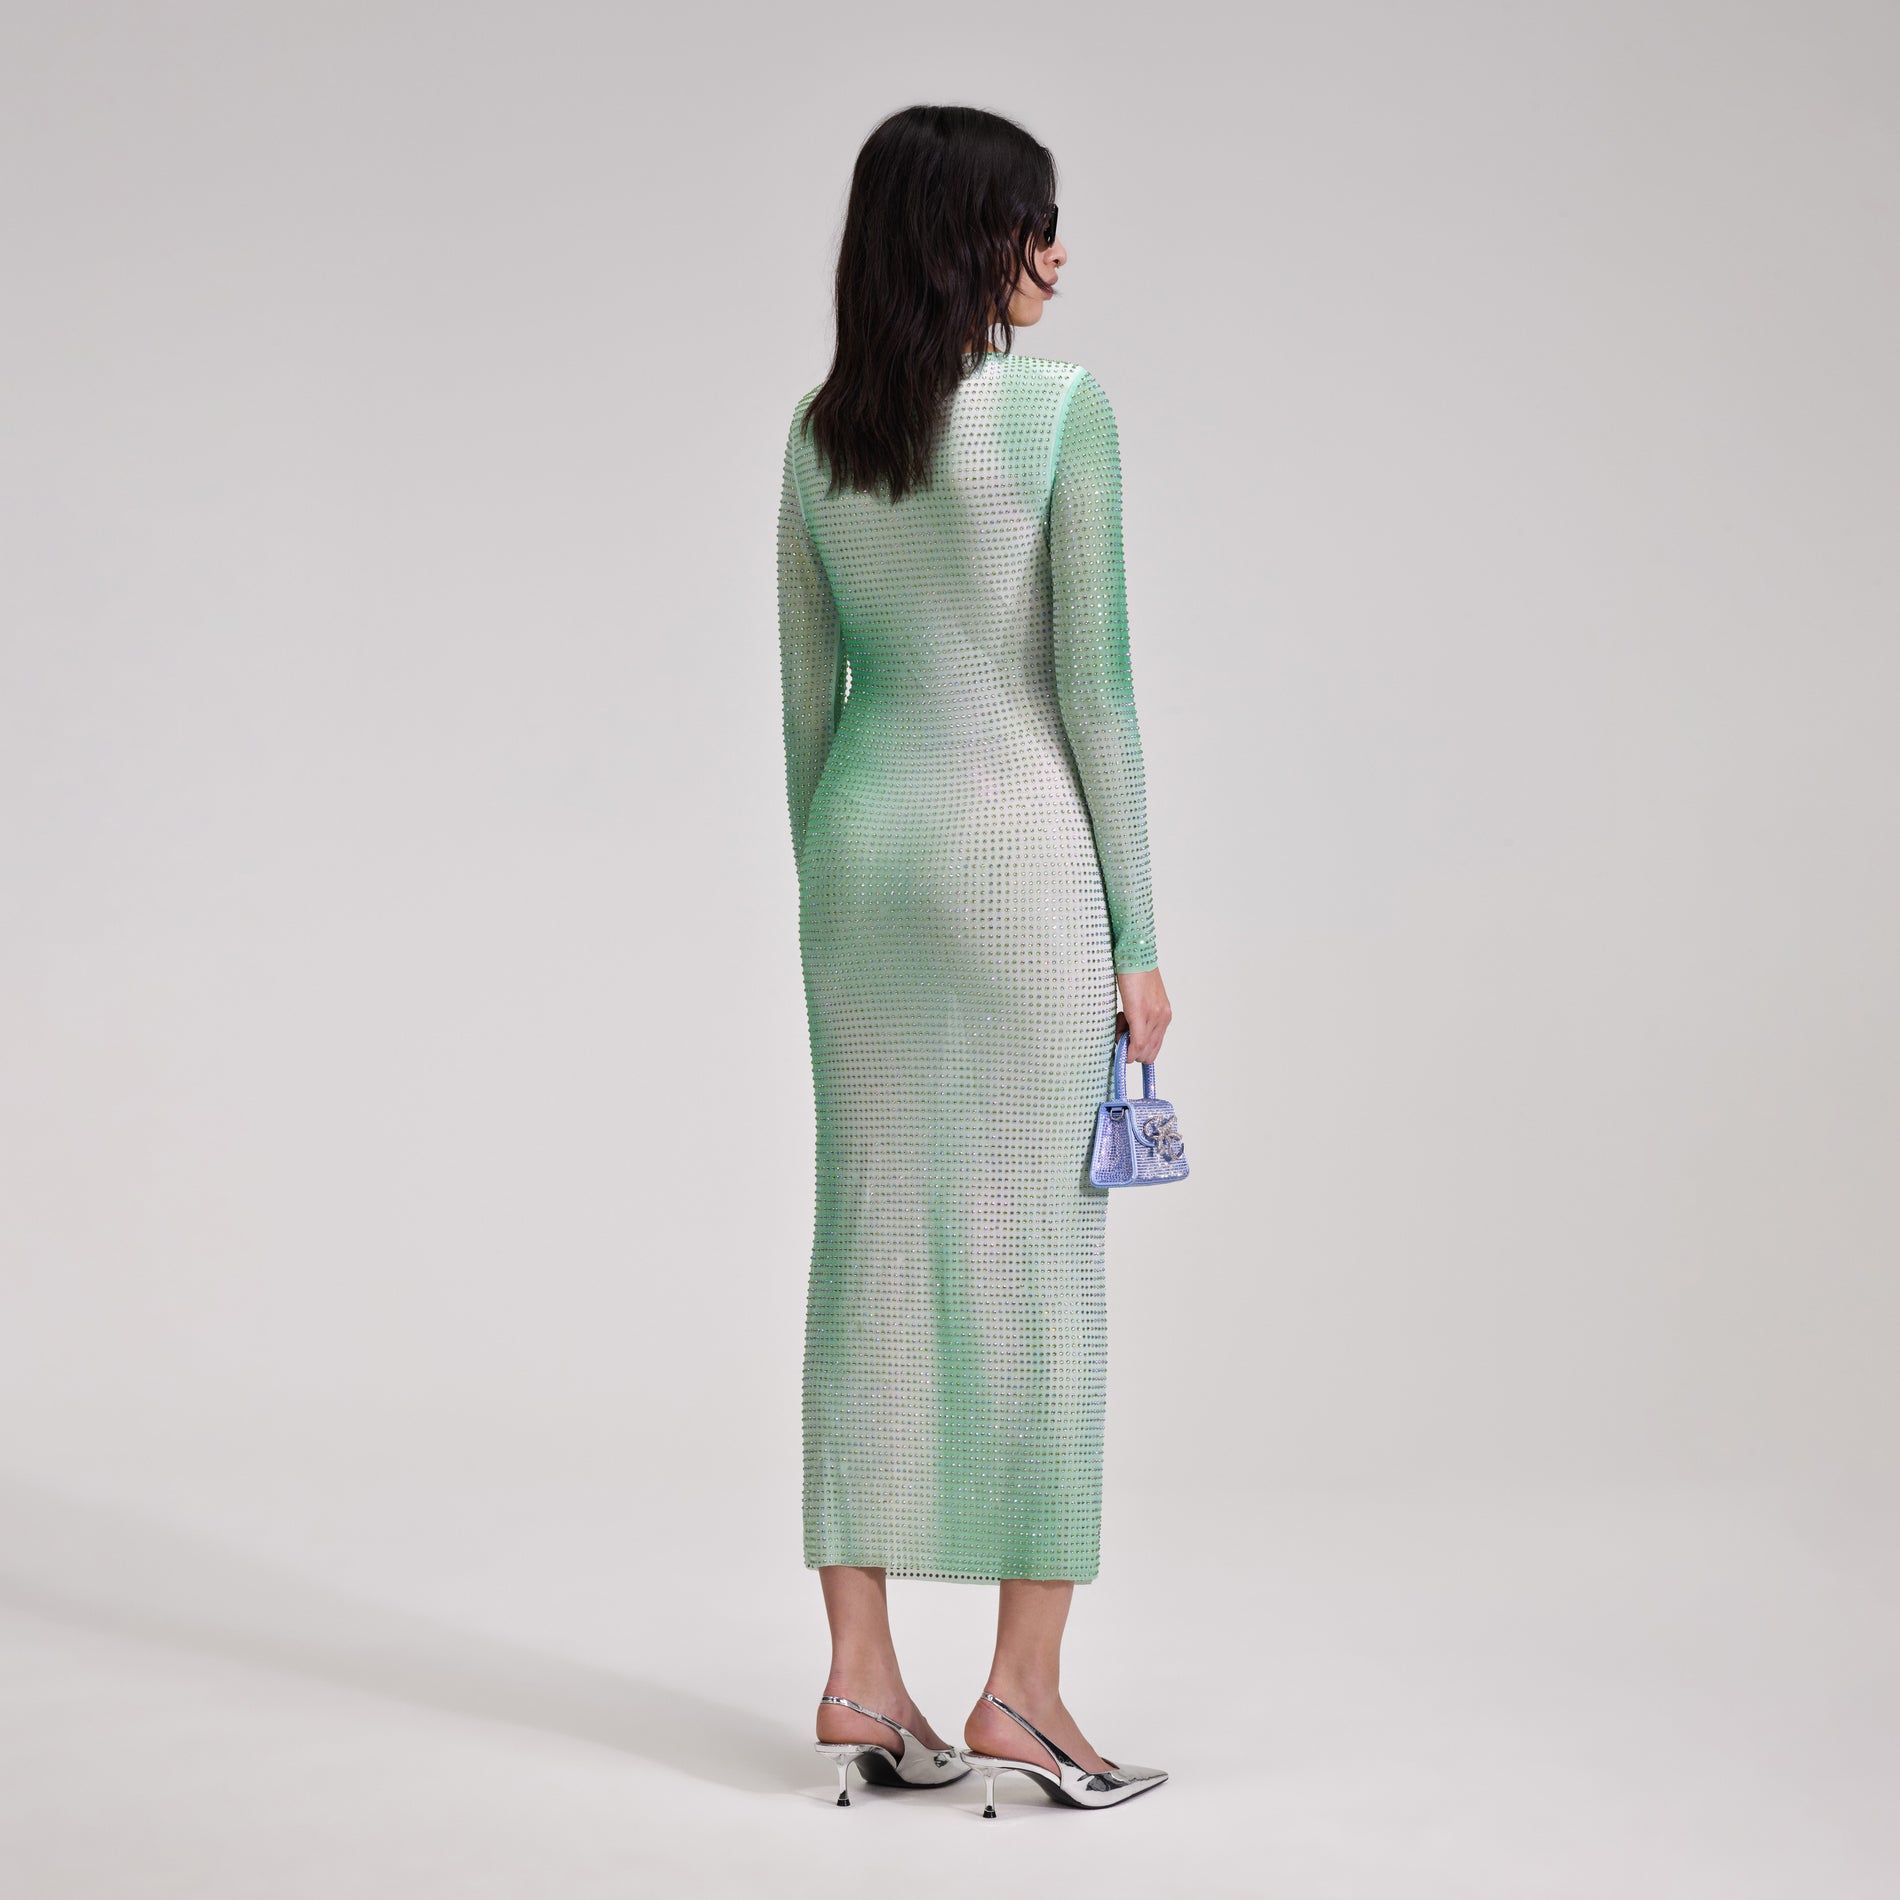 A woman wearing the Green Contour Print Midi Dress